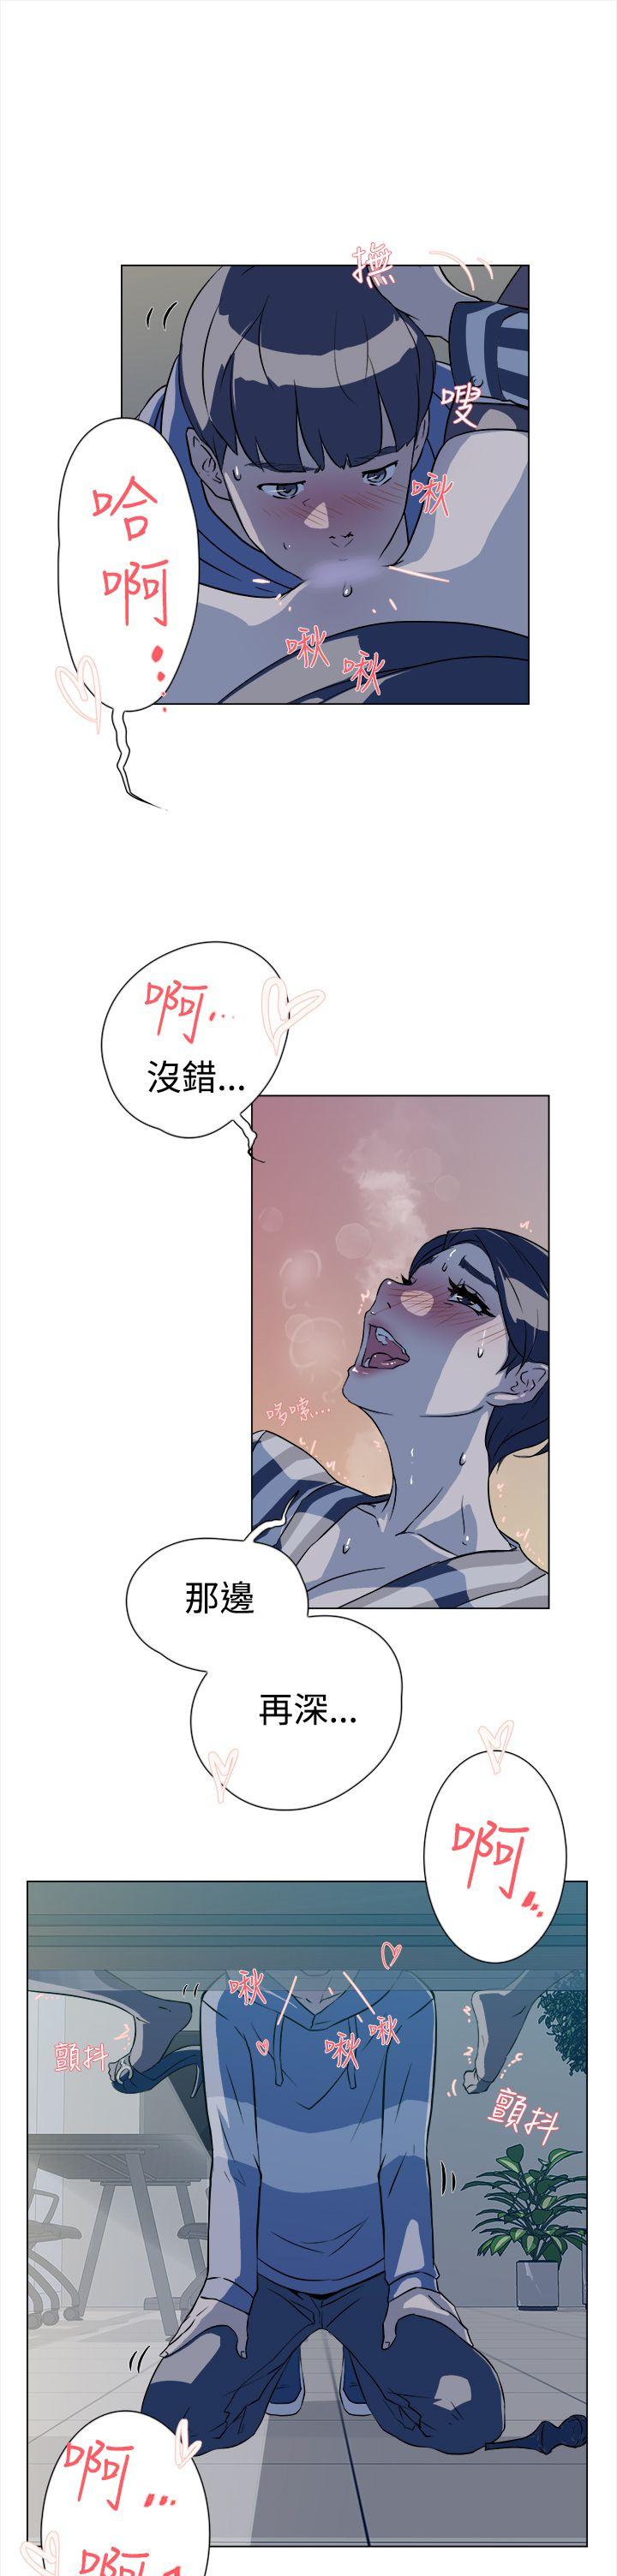 韩国污漫画 她的高跟鞋(無刪減) 第5话 14